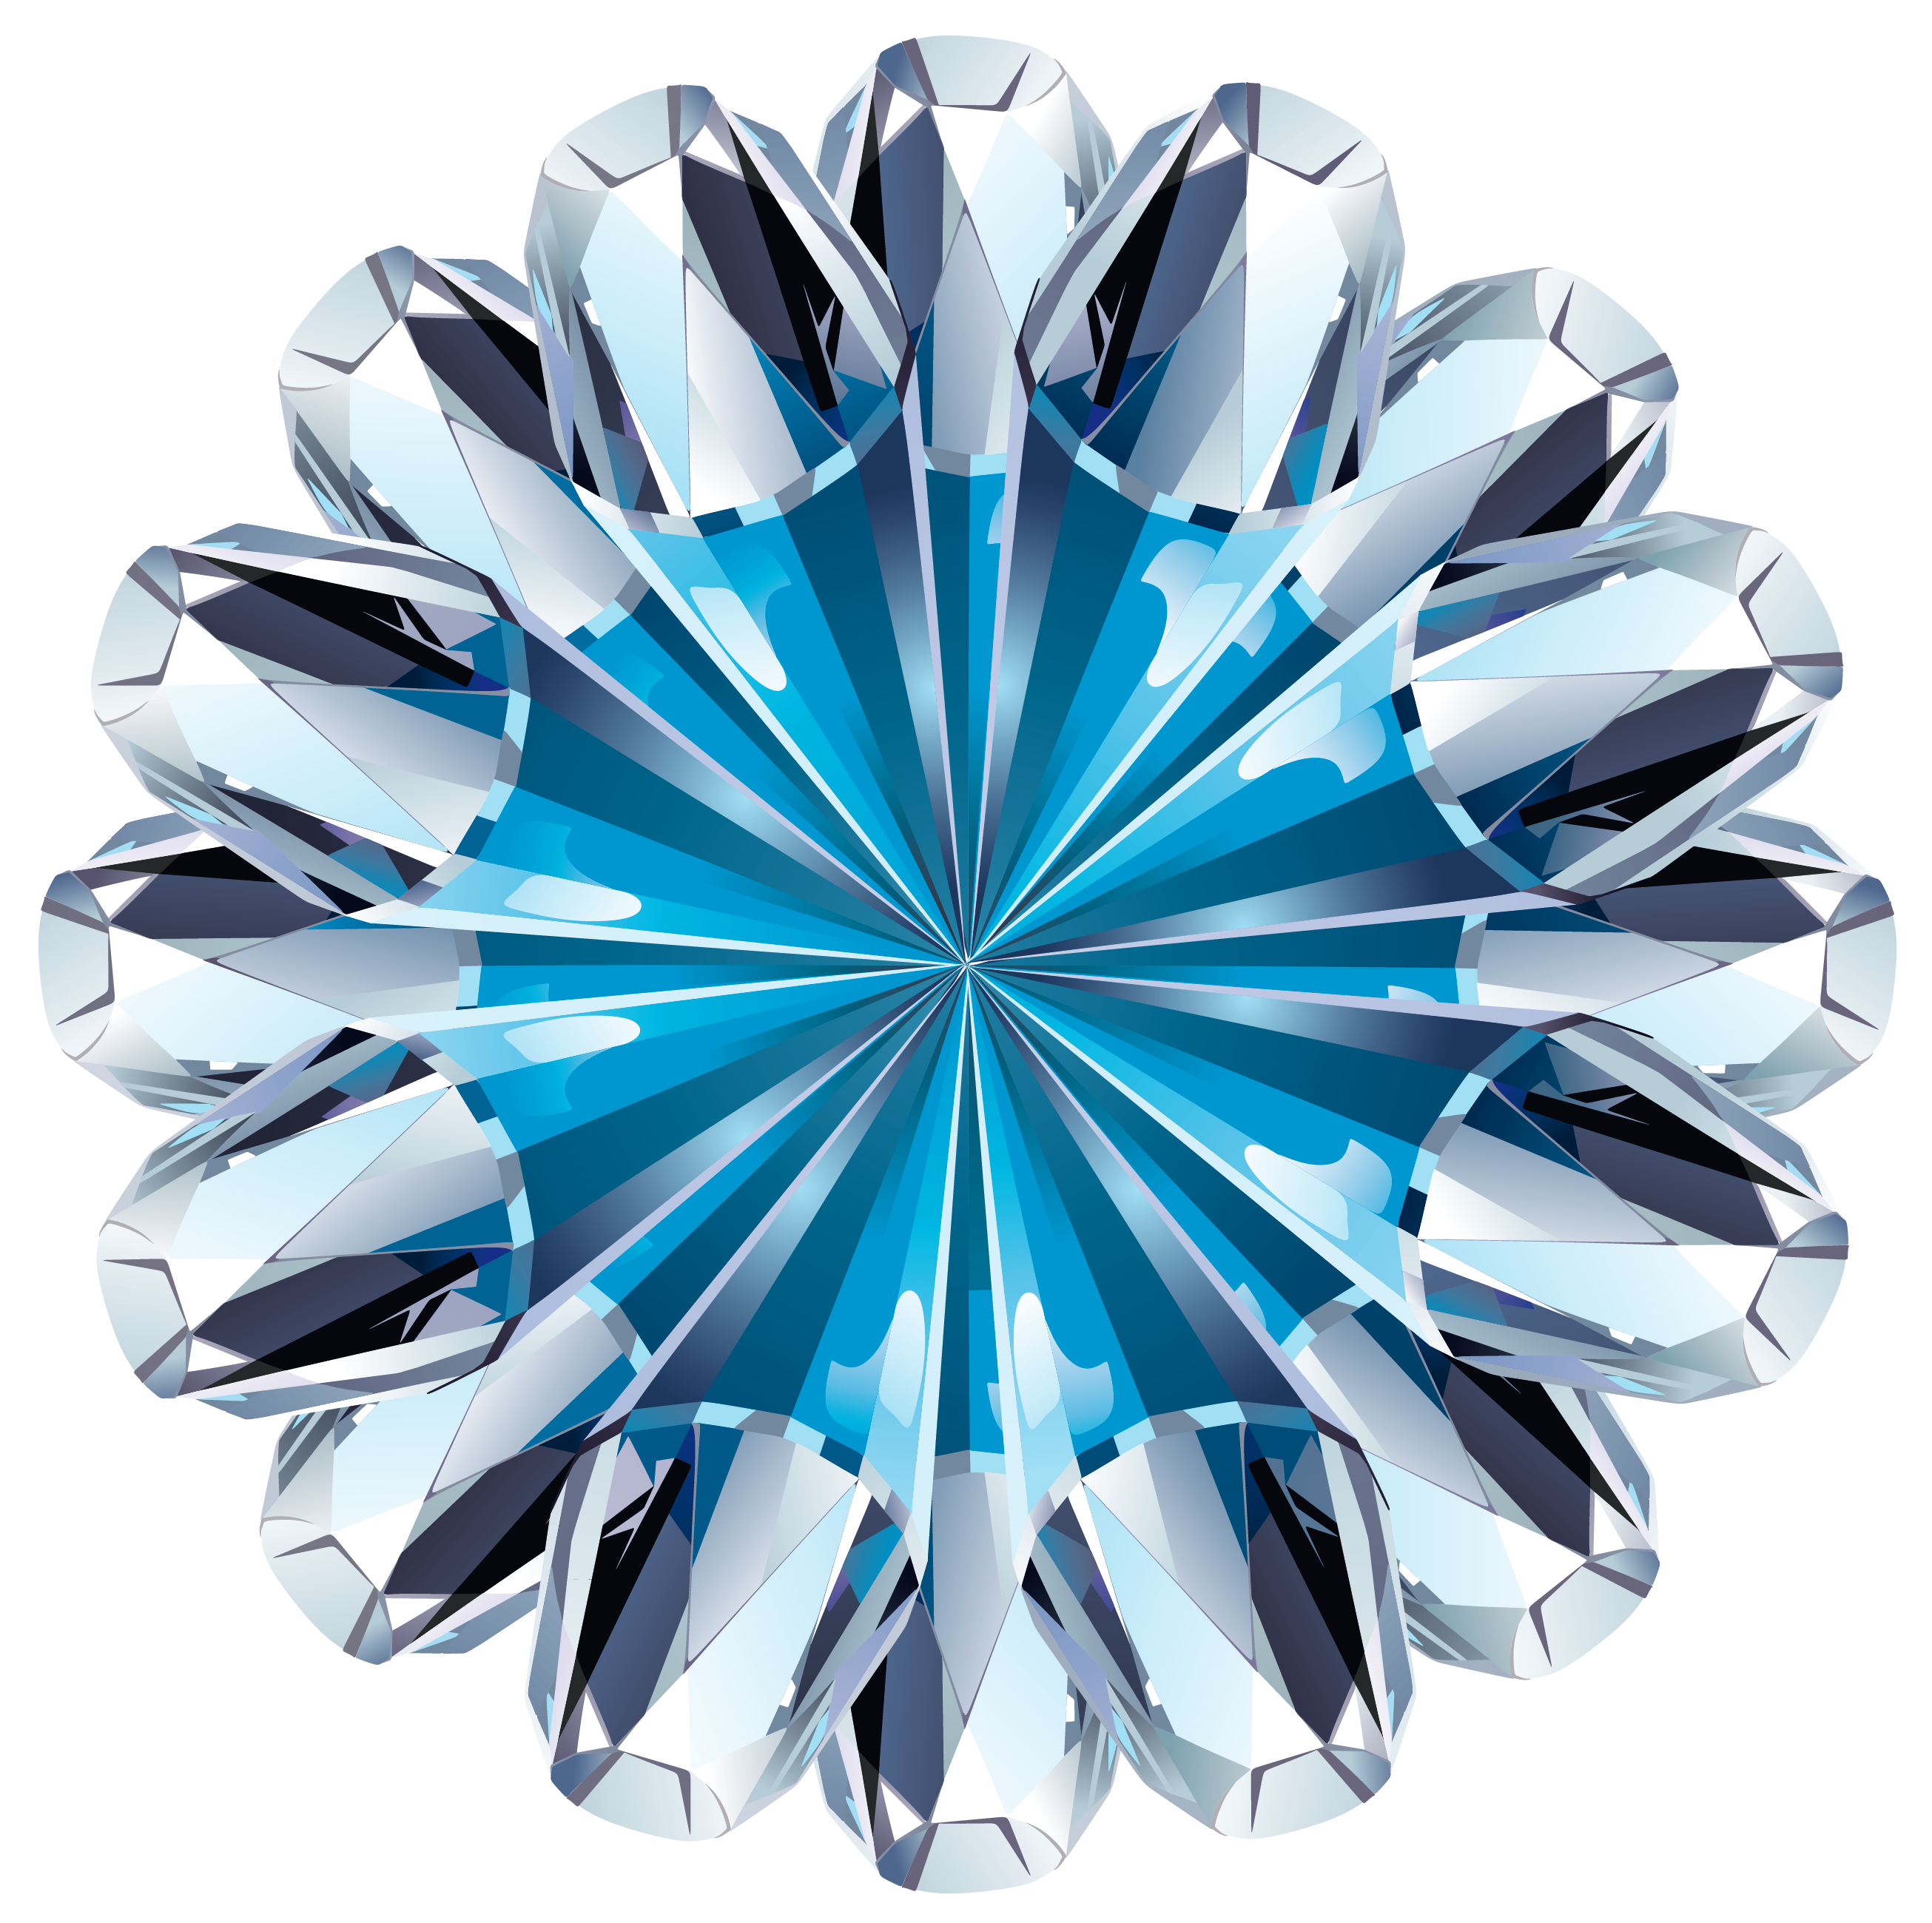 clipart diamond teal